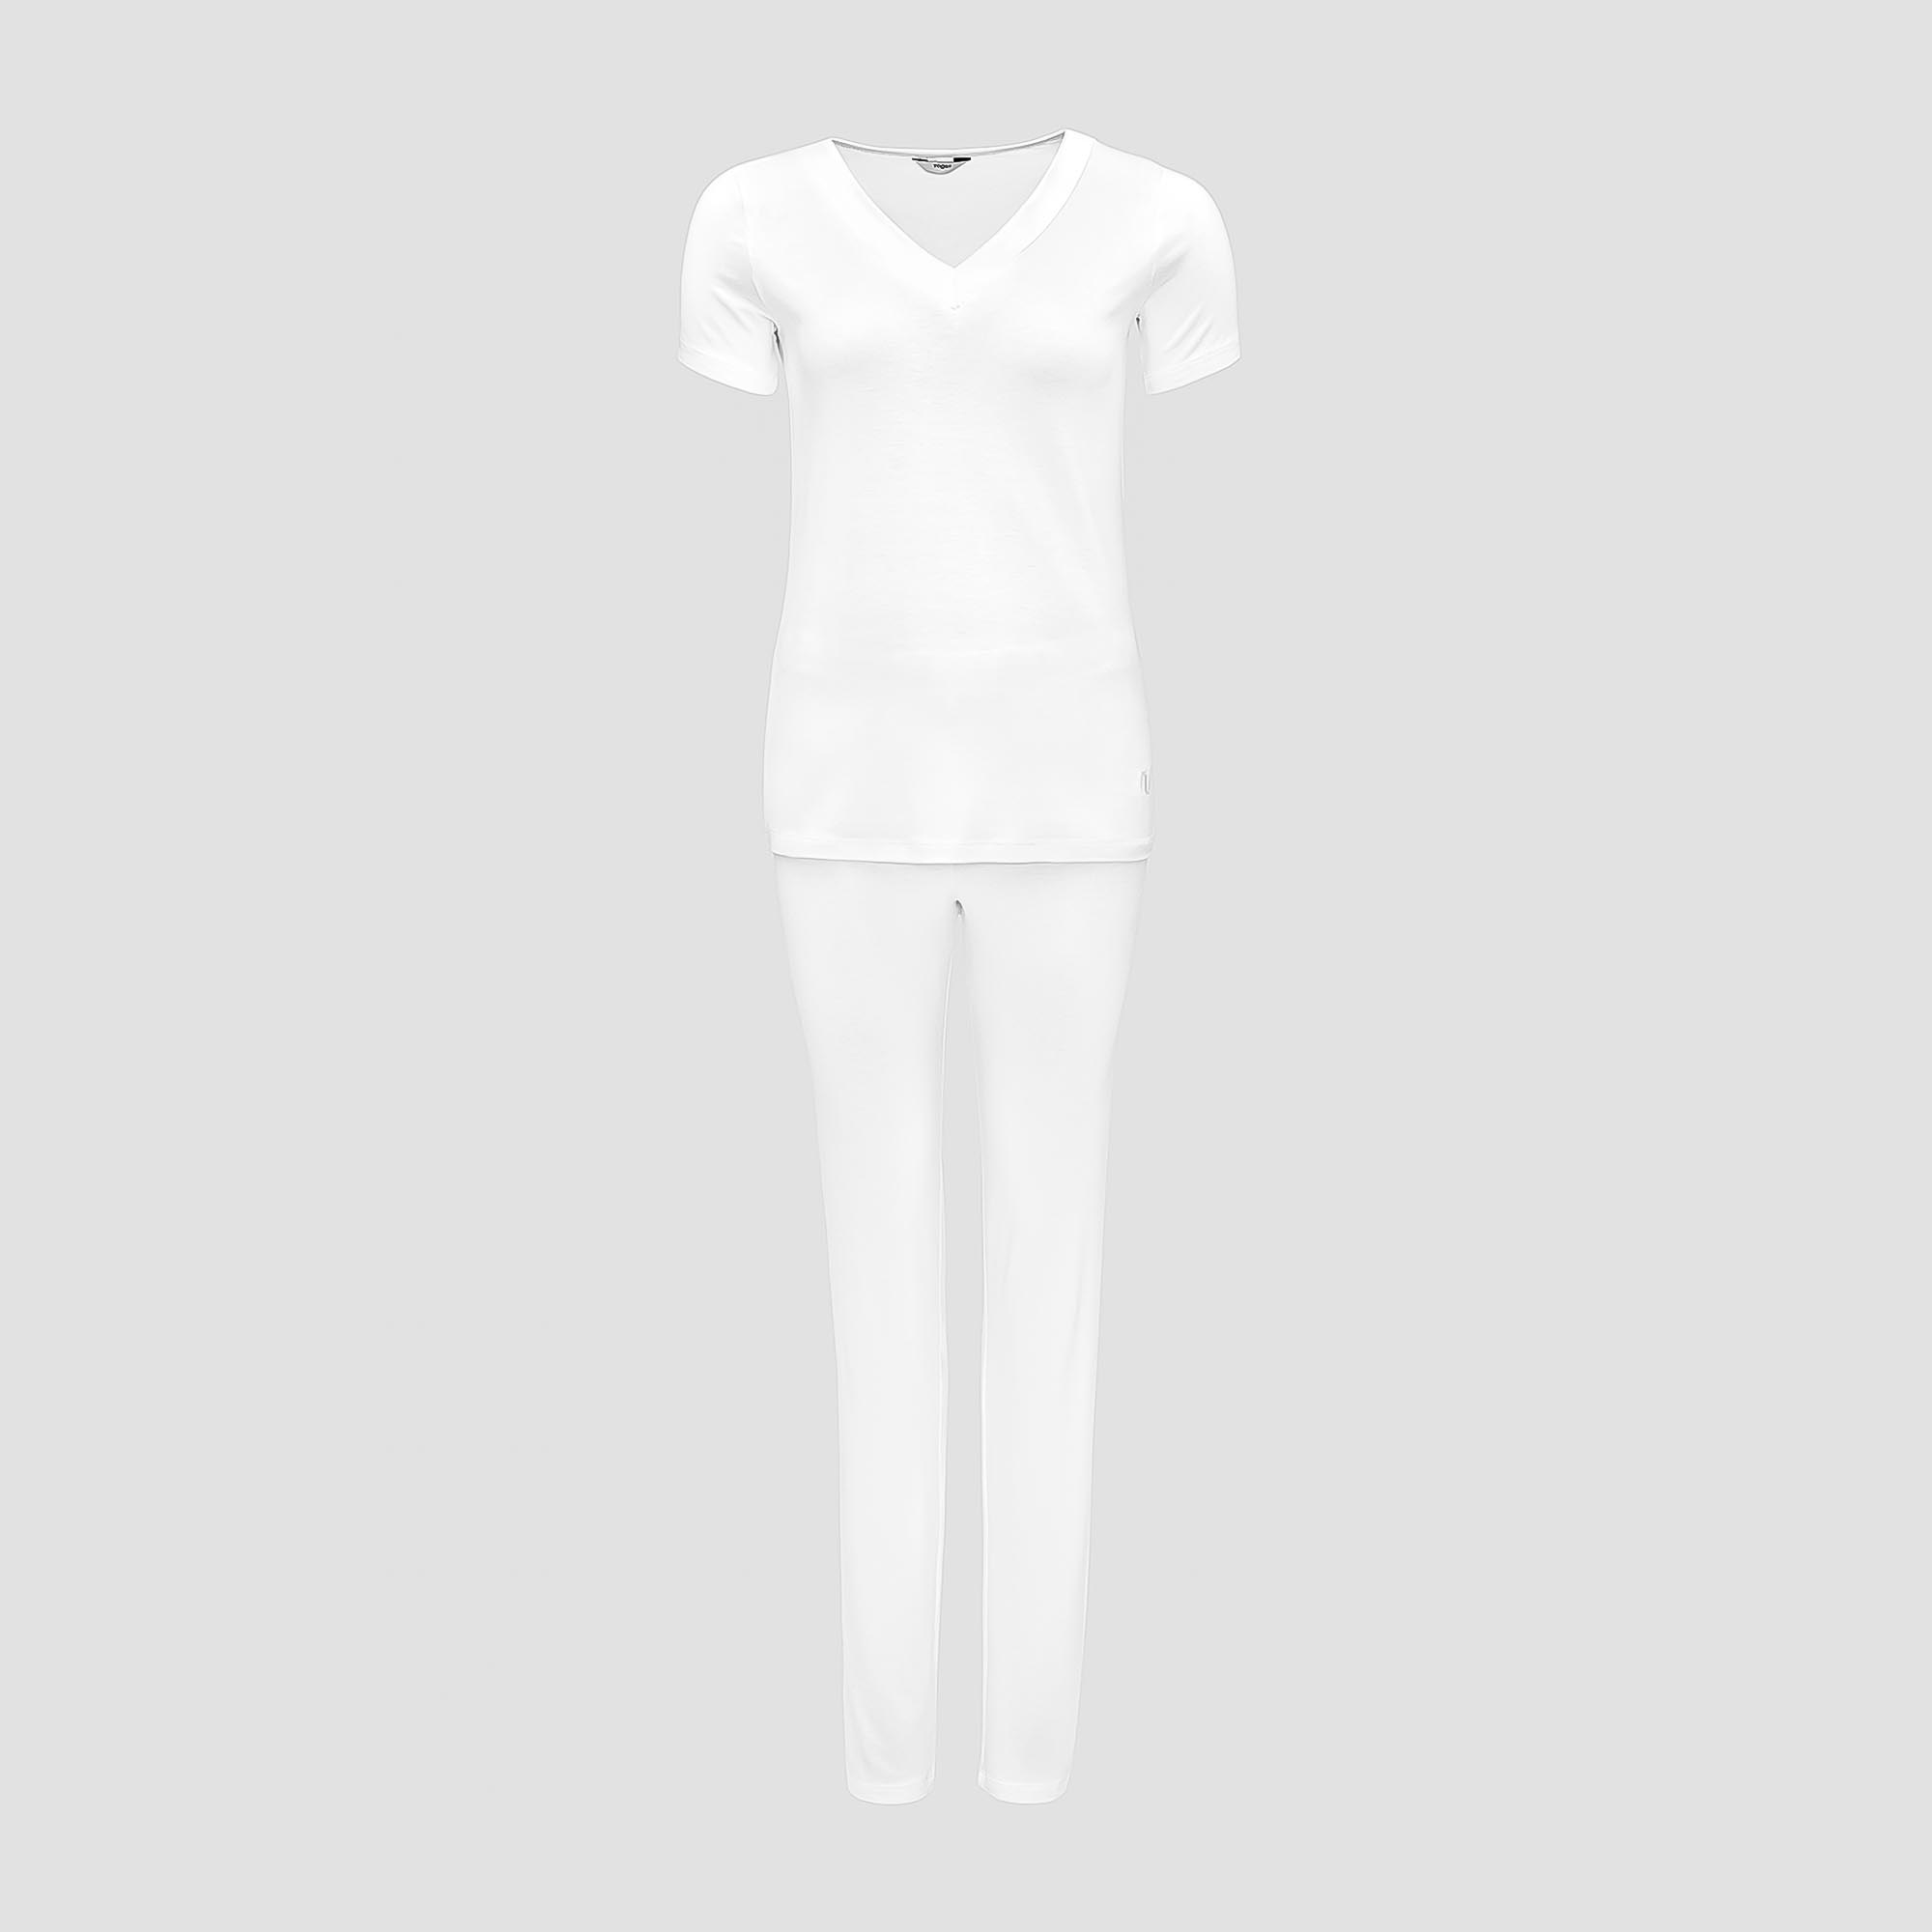 Пижама Togas Ингелла белая женская L(48) 2 предмета жен пижама с шортами инь янь белый р 46